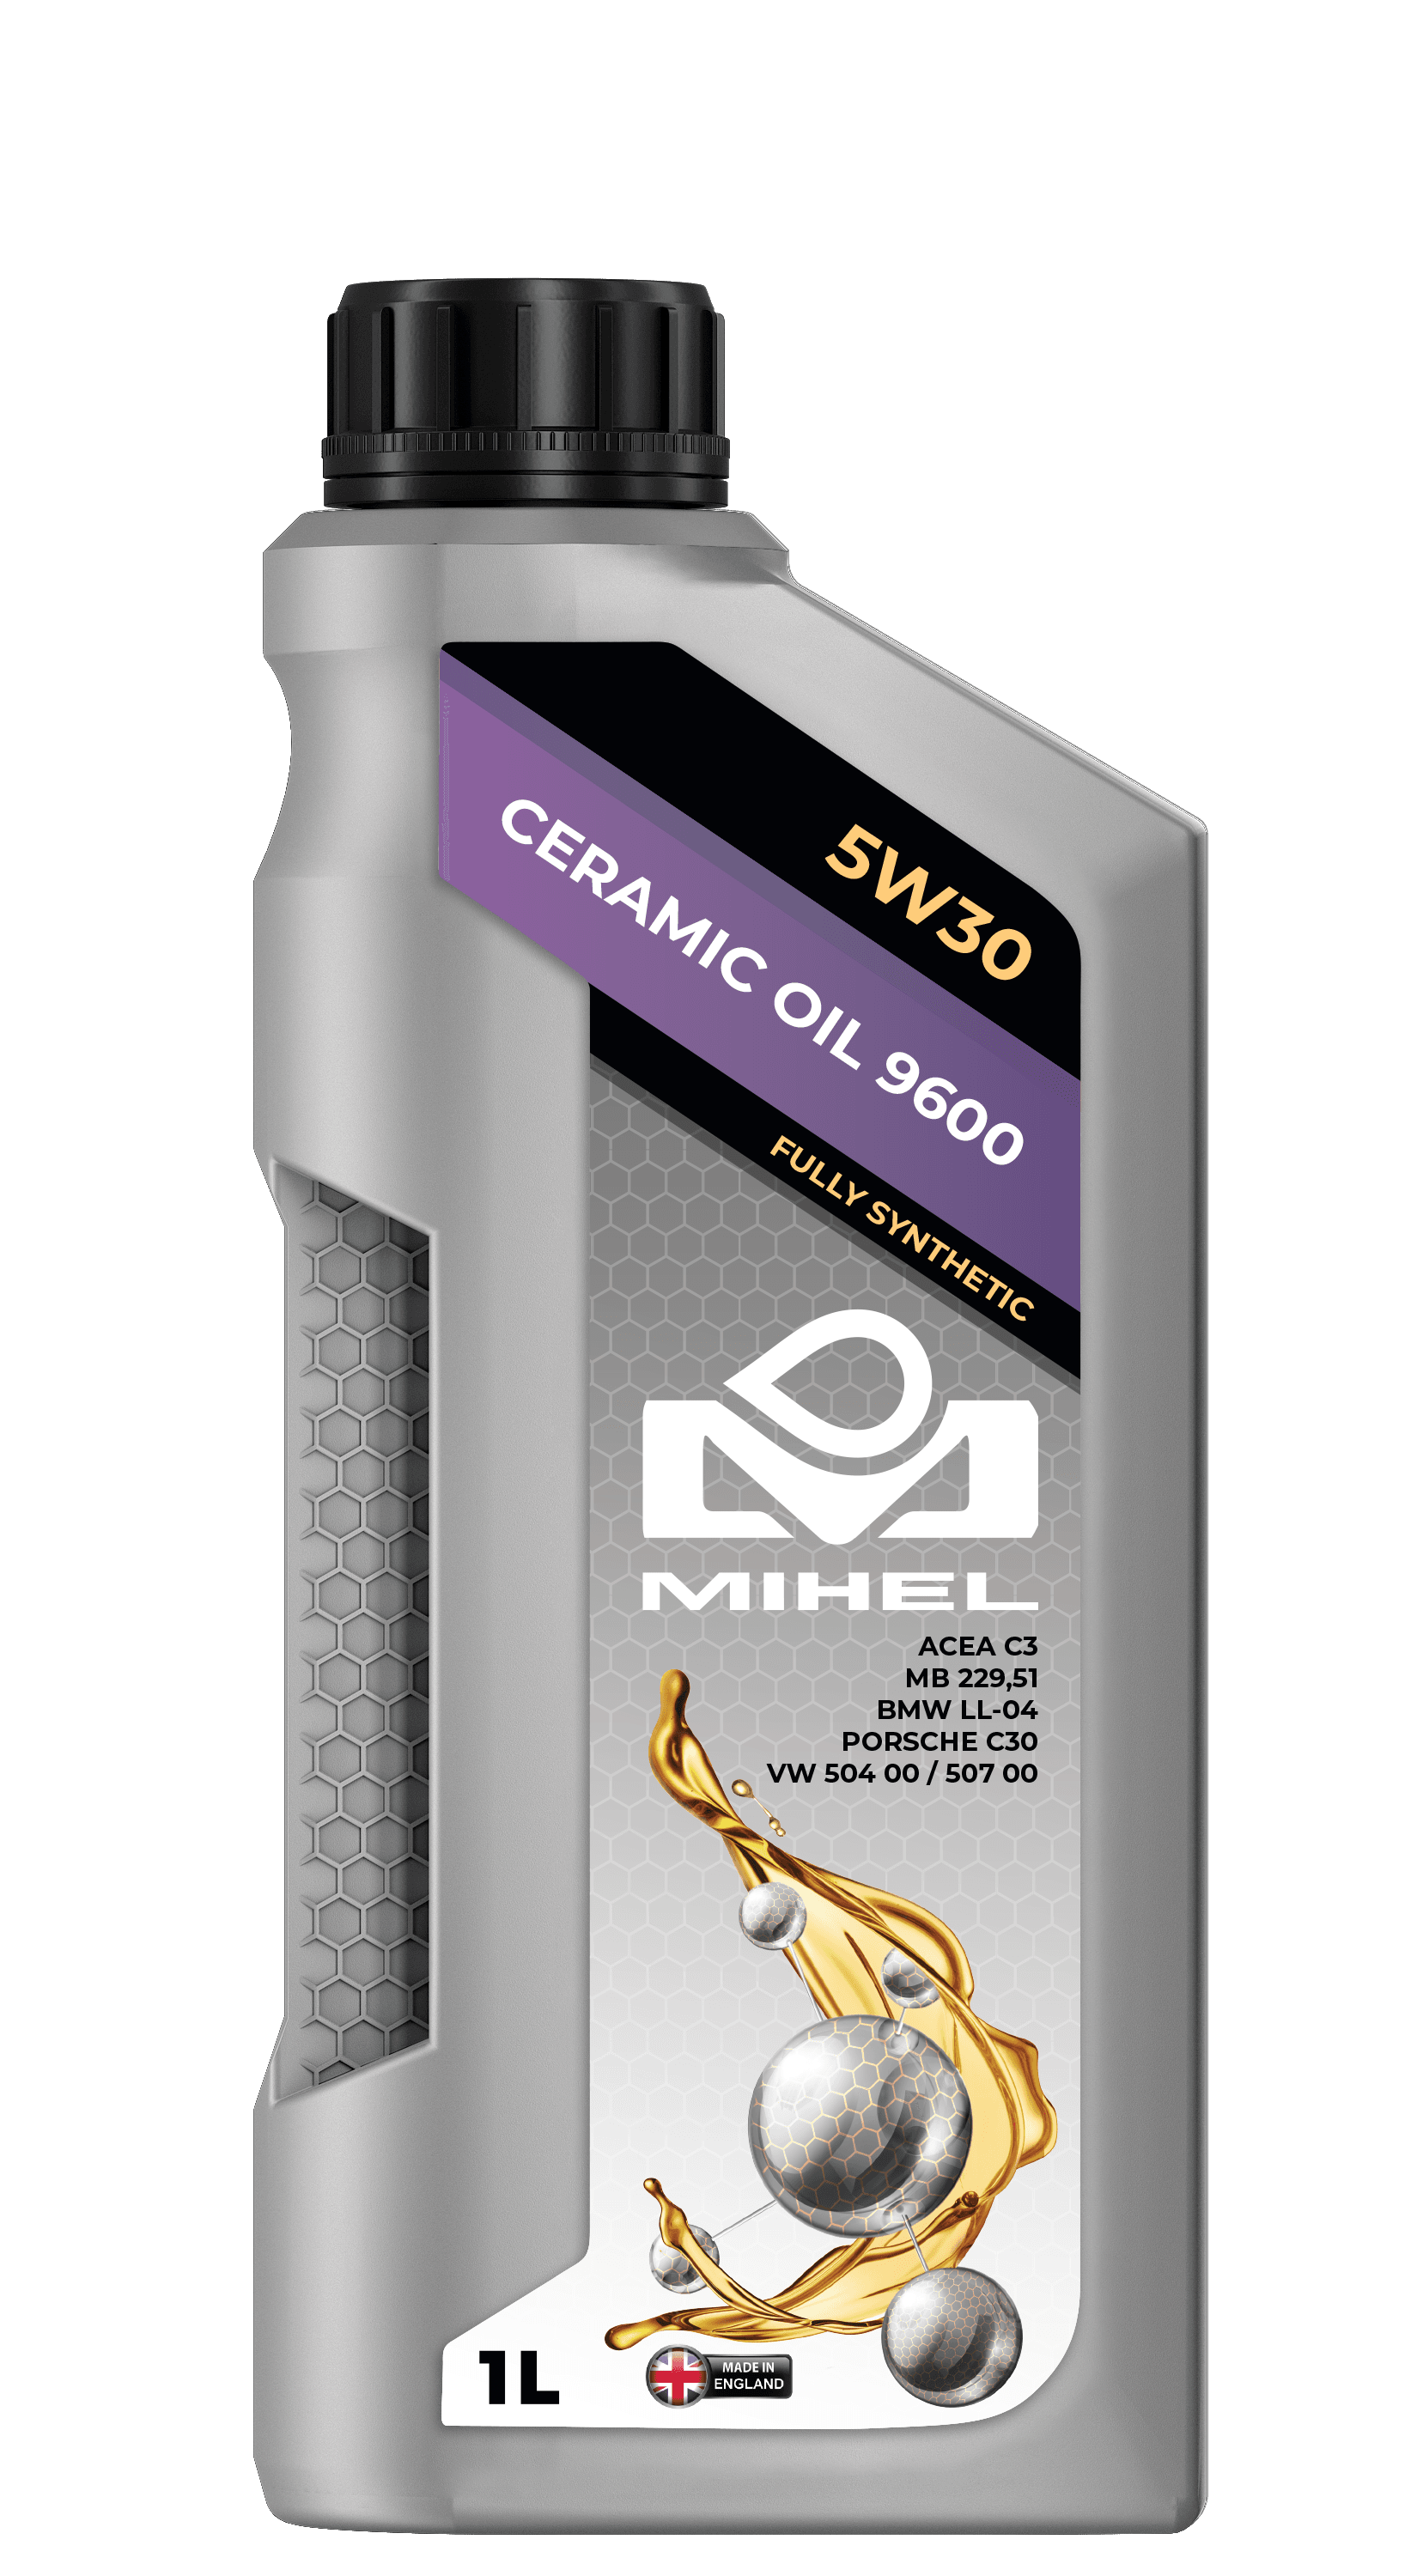 MIHEL Ceramic Oil® 9600 5W30